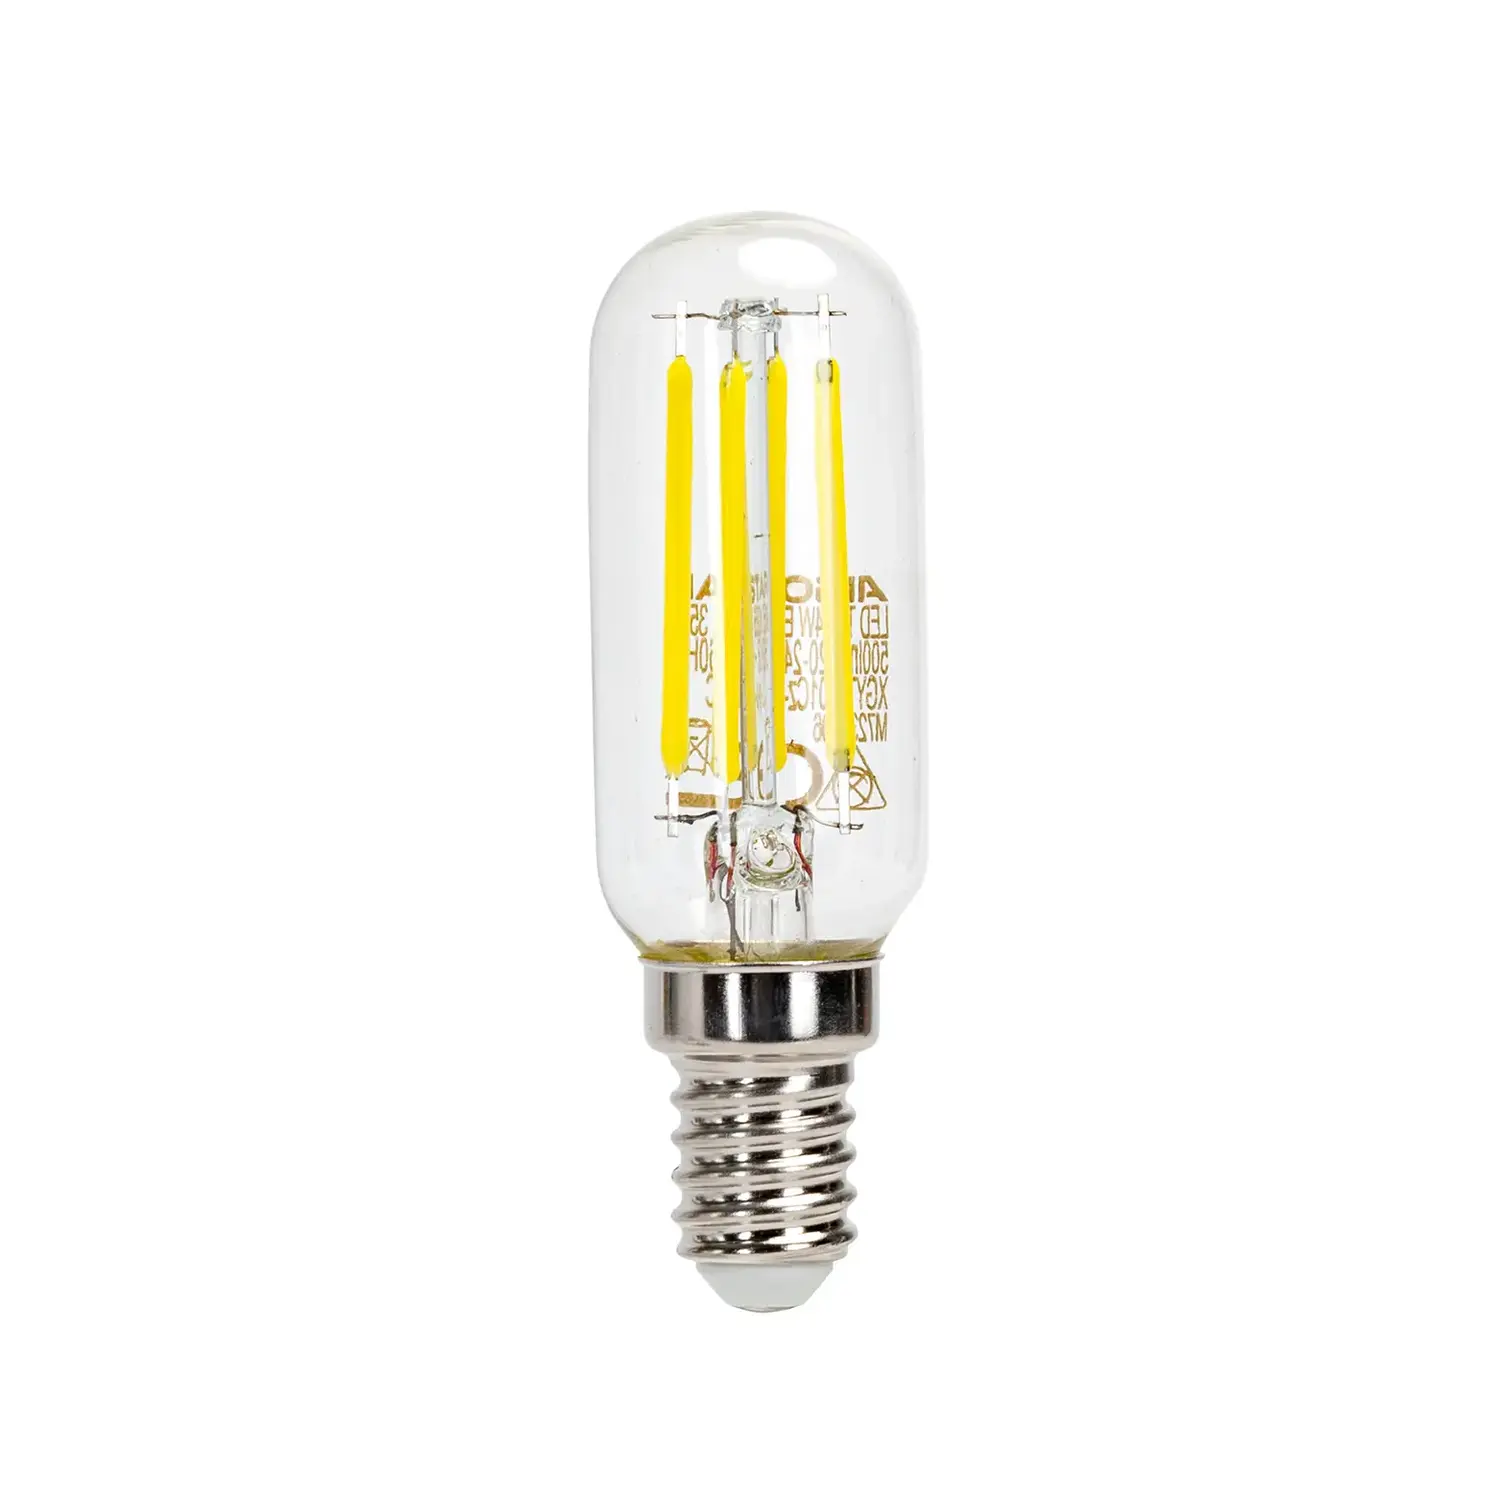 immagine del prodotto lampadina per cappa a led T25 lampada e14 4 watt bianco freddo